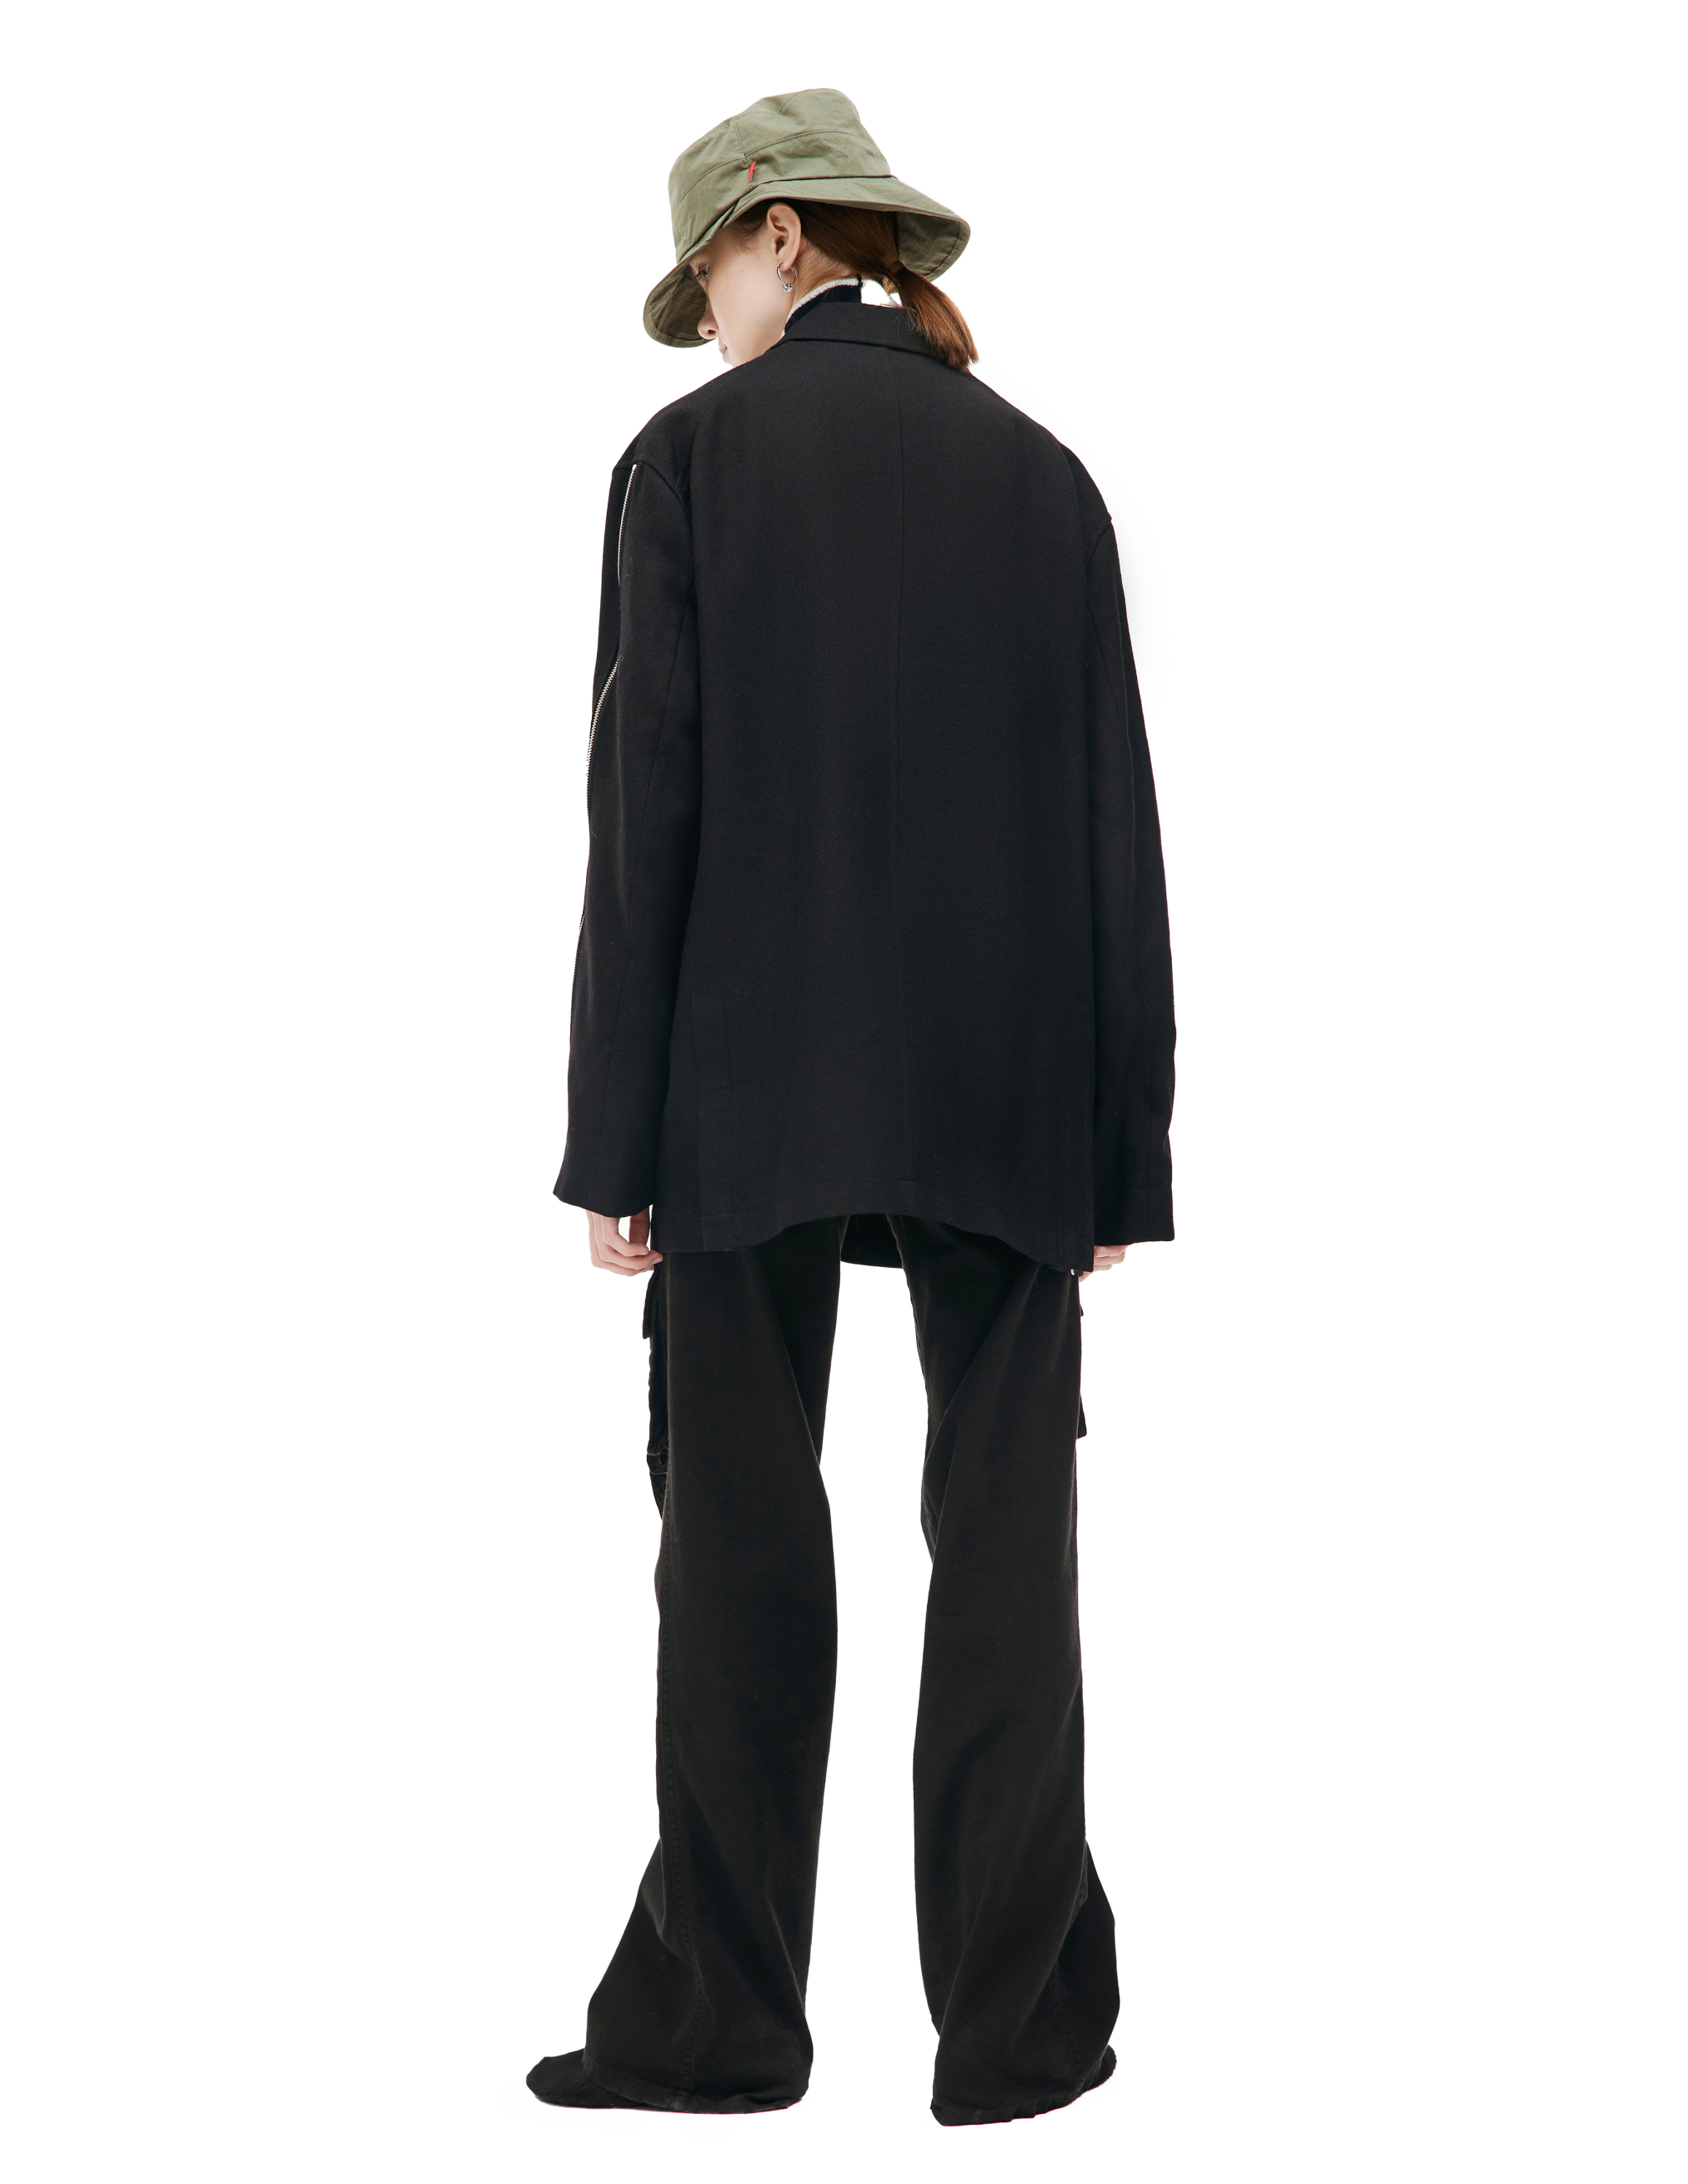 Шерстяной пиджак с молниями Undercover UC2C4104-1, размер 5 - фото 4